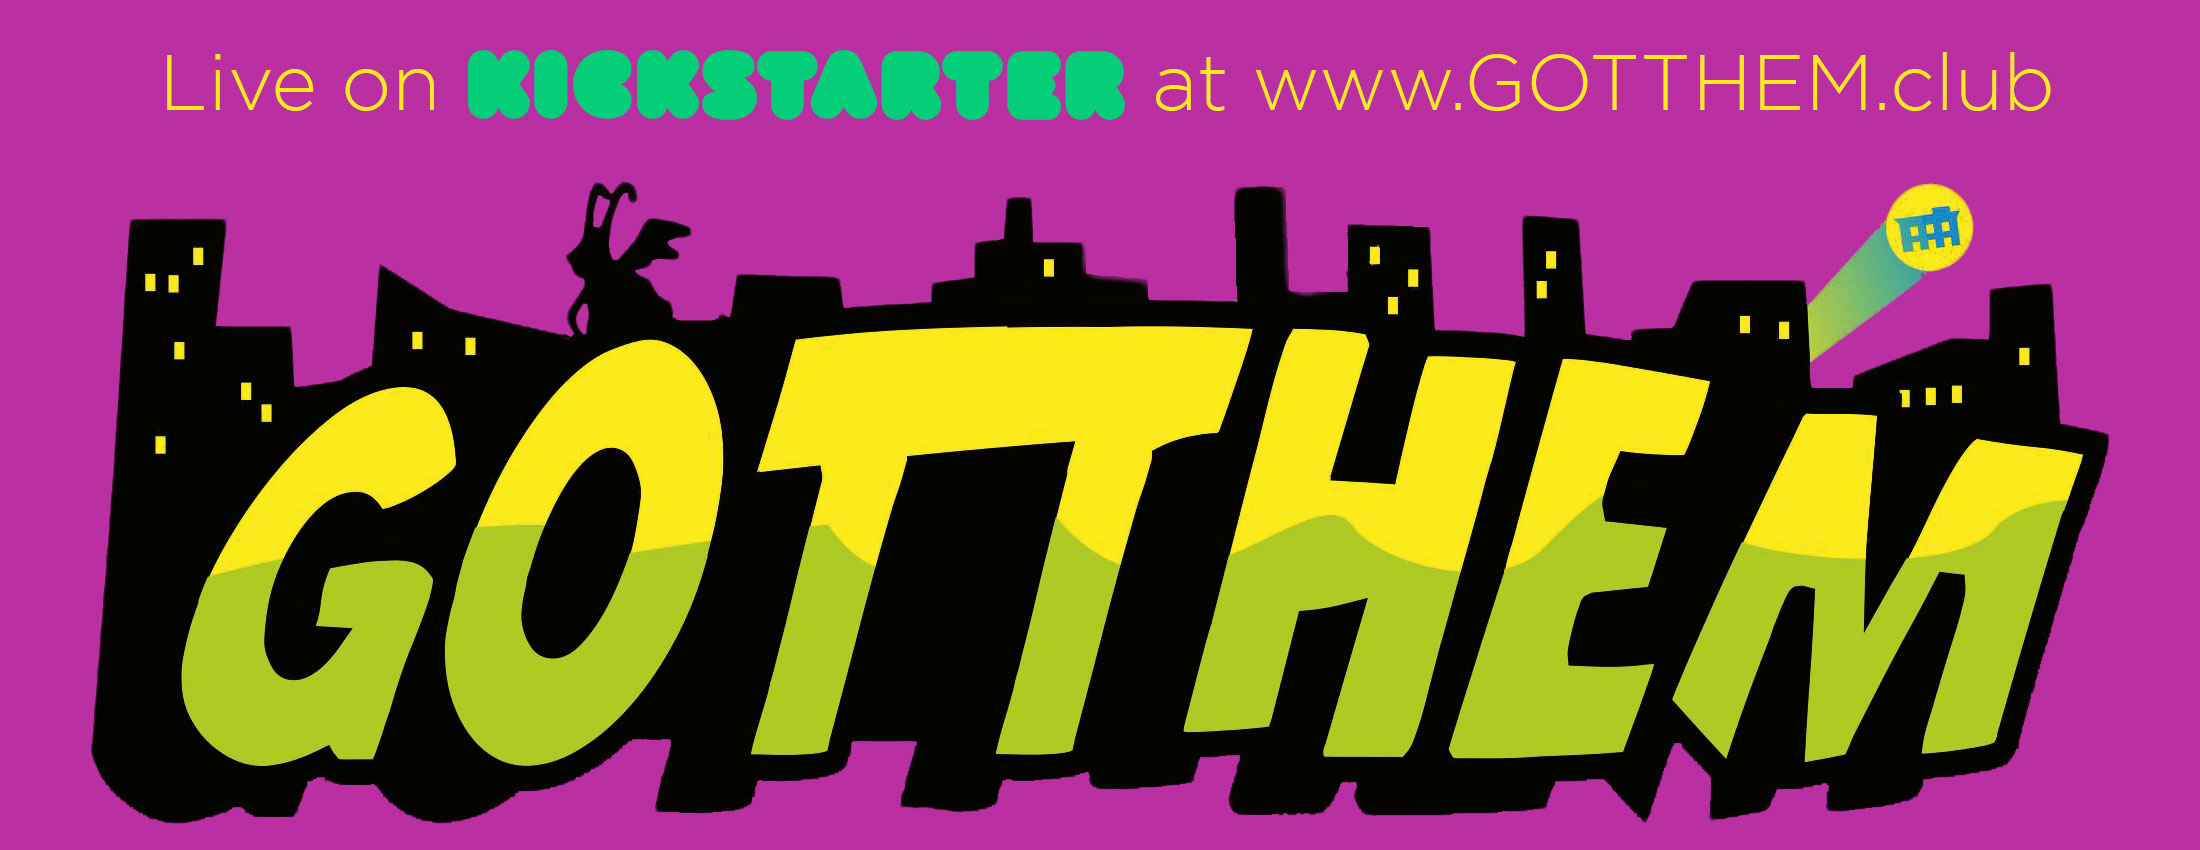 GOTTHEM-logo2